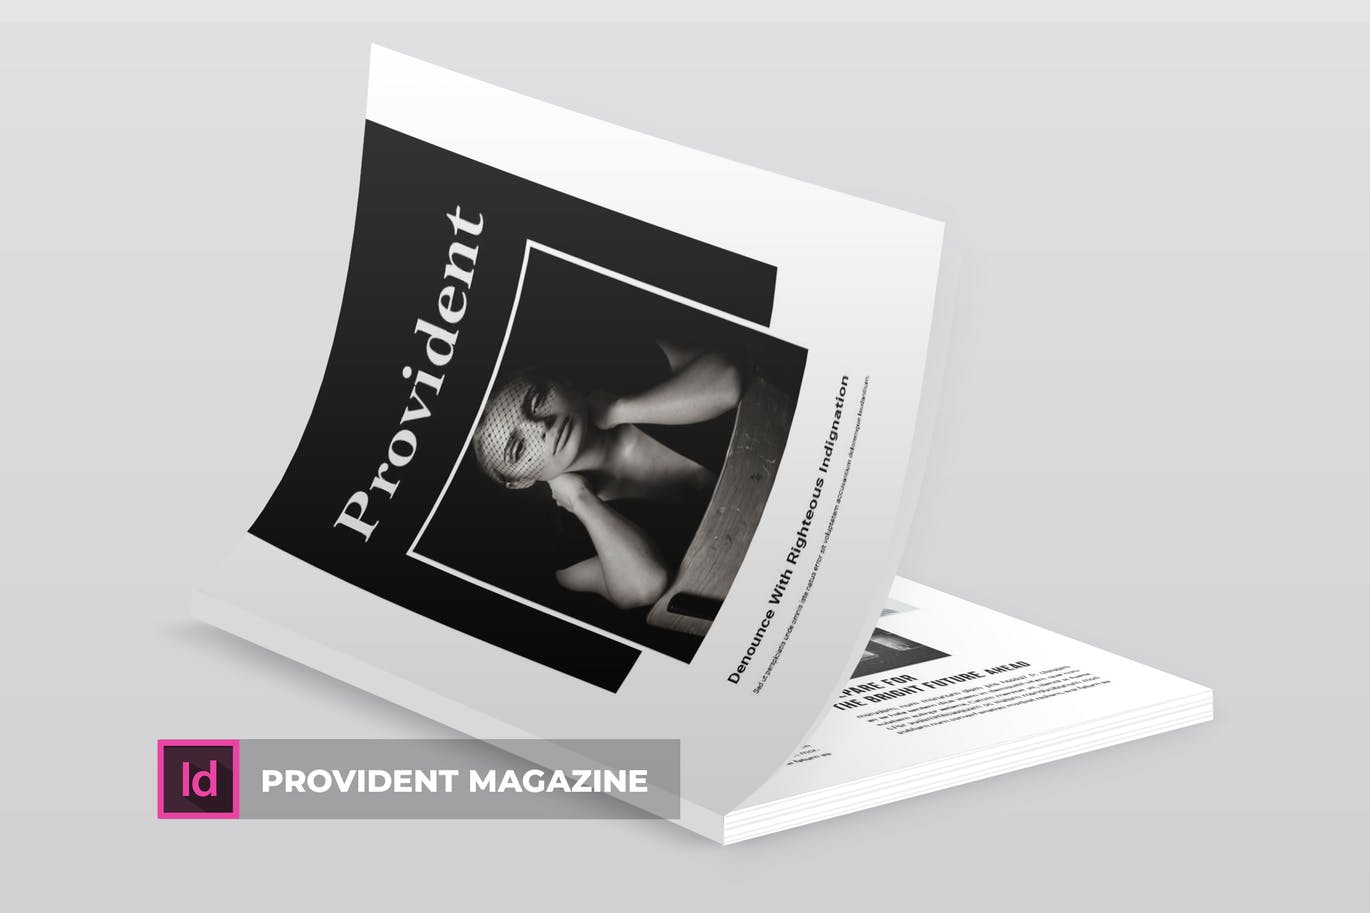 高端摄影主题A4蚂蚁素材精选杂志版式设计INDD模板 Provident | Magazine Template插图